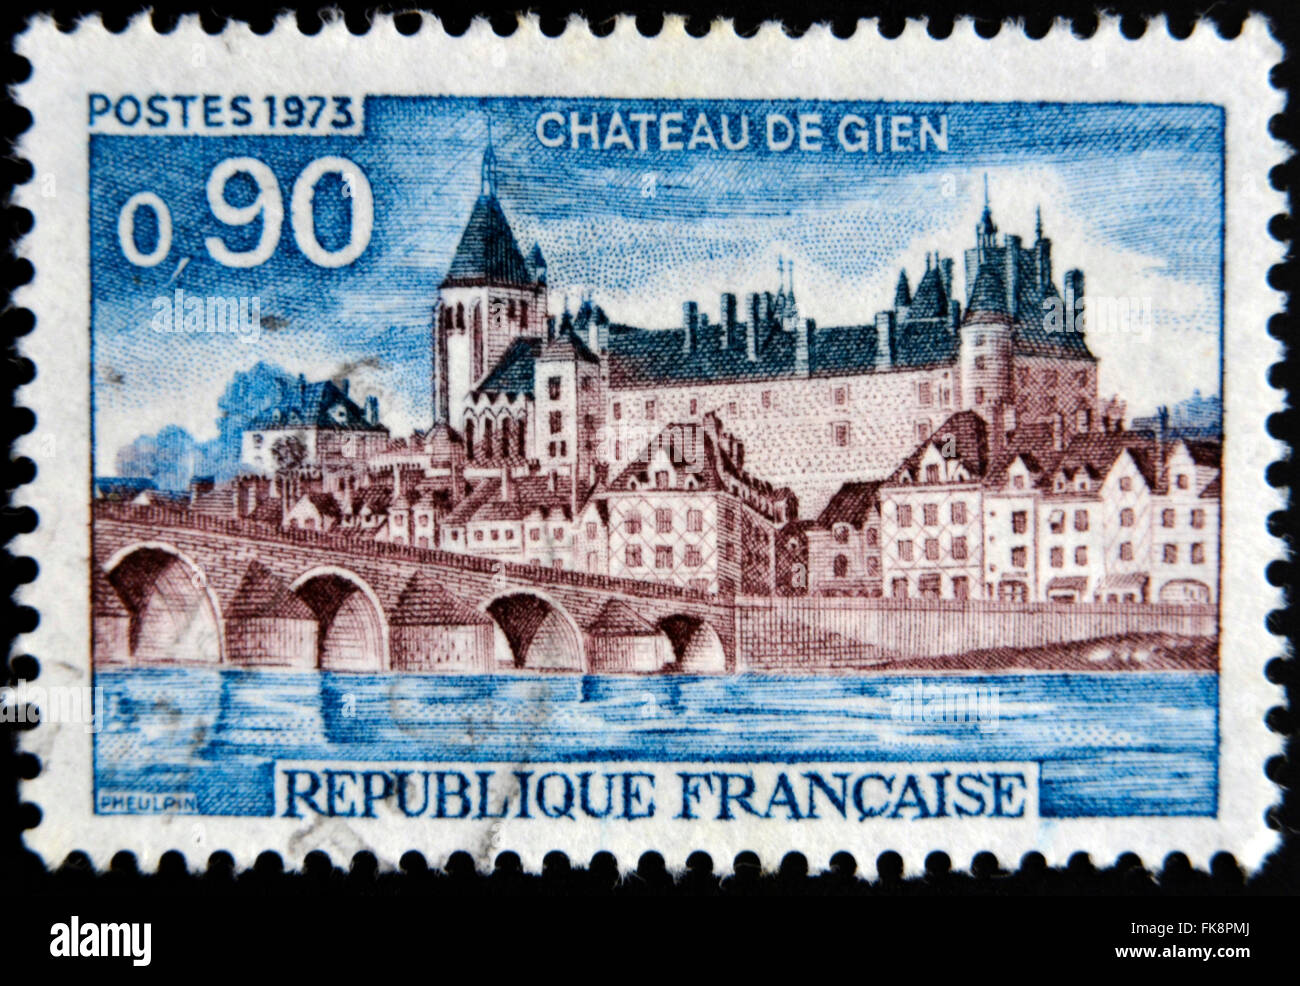 FRANCE - VERS 1973 : un timbre imprimé en France montre le Château de Gien, vers 1973 Banque D'Images